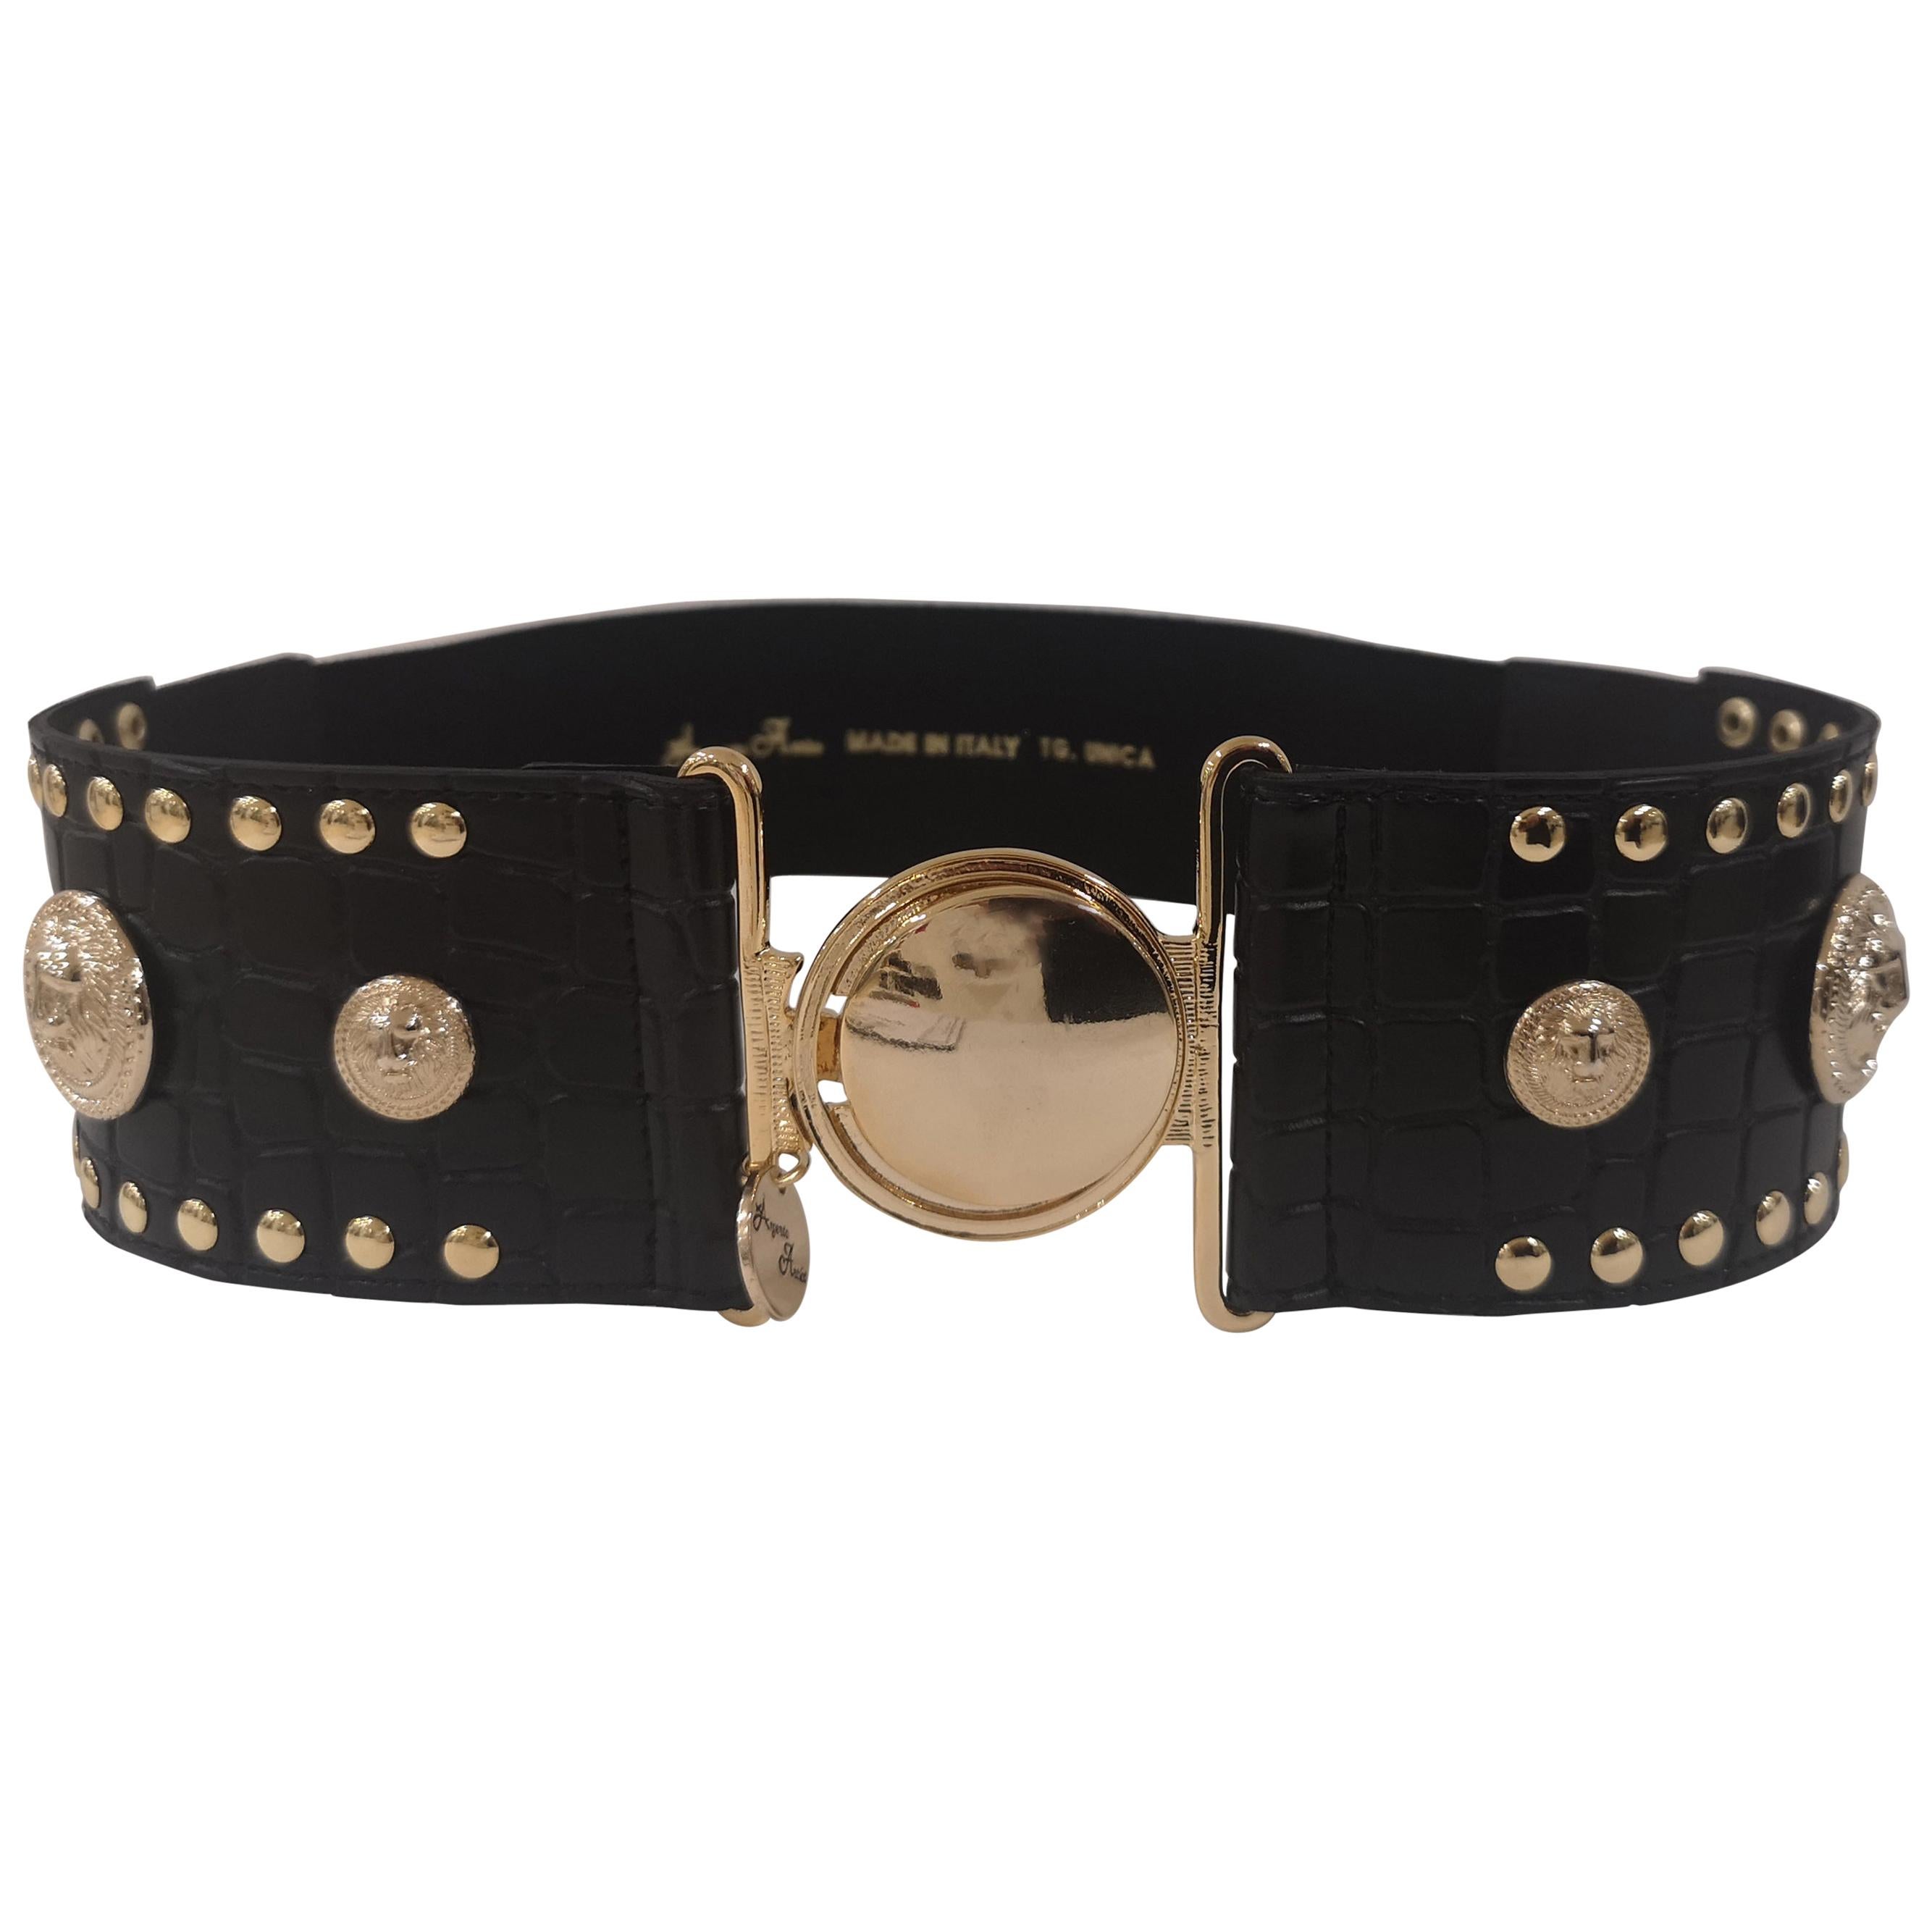 Black leather gold hardware elastic belt NWOT